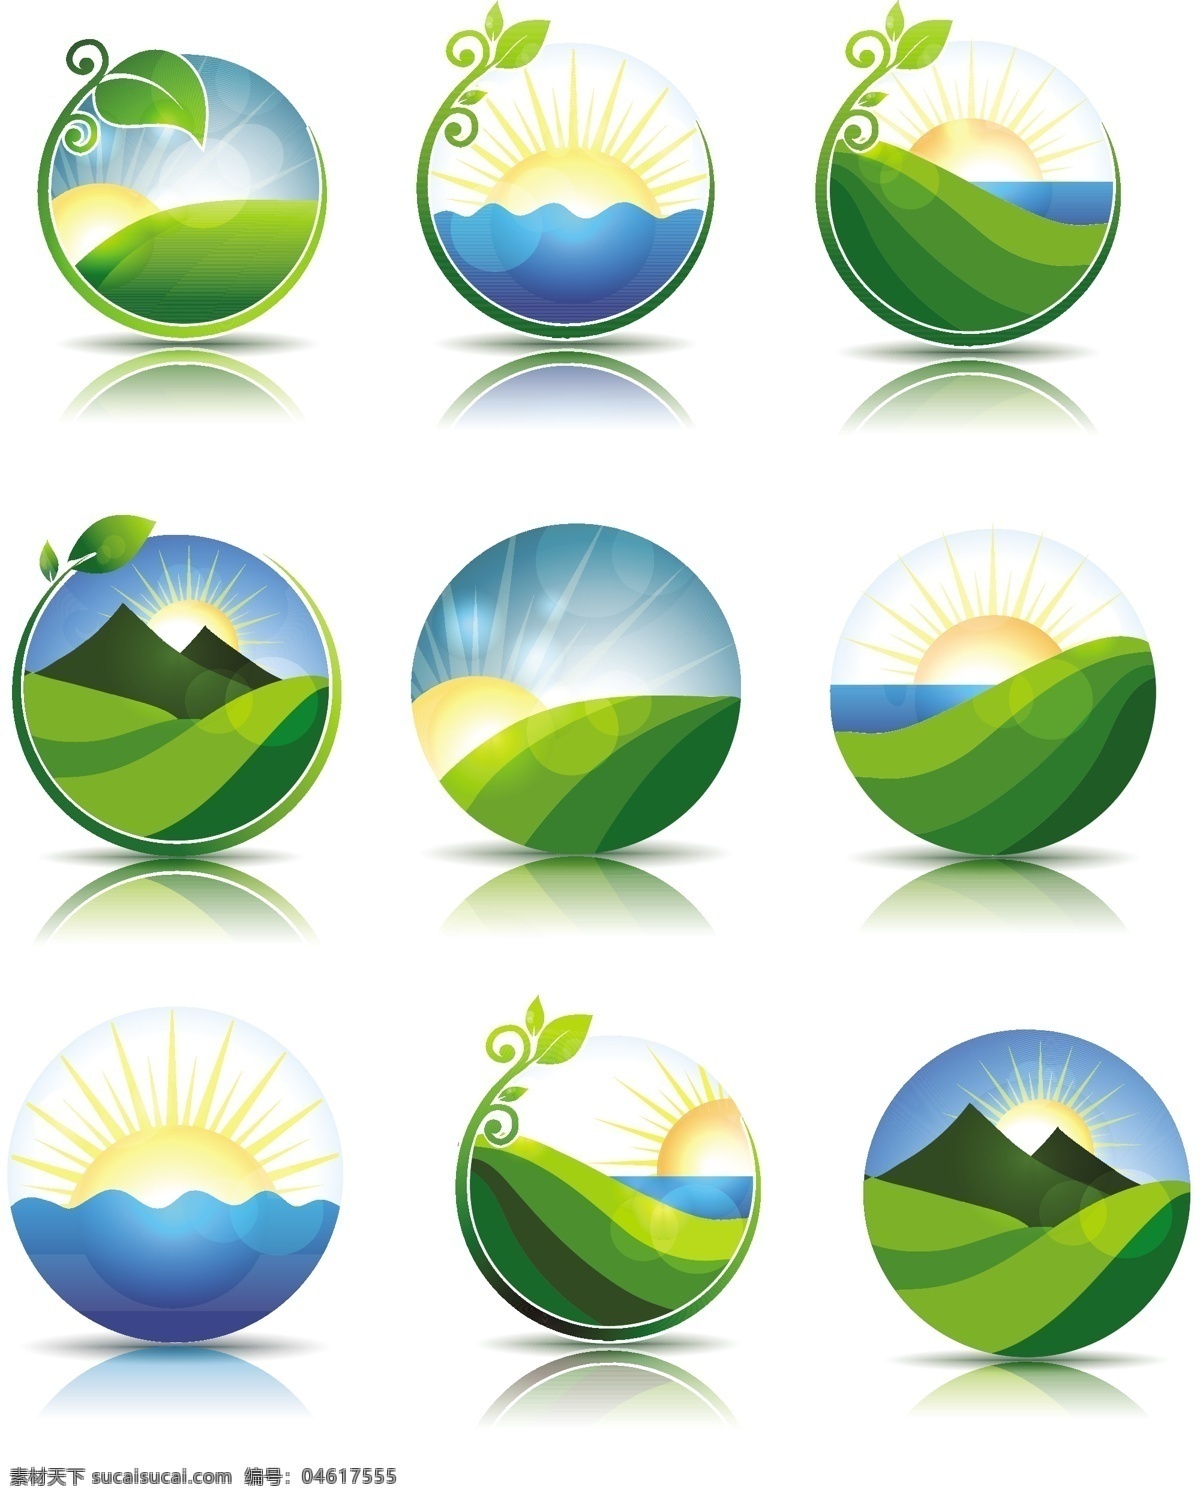 绿色环保 logo 绿色 植物 太阳 环保 风景 logo设计 图标设计 标志设计 图形logo 空间环境 矢量素材 白色